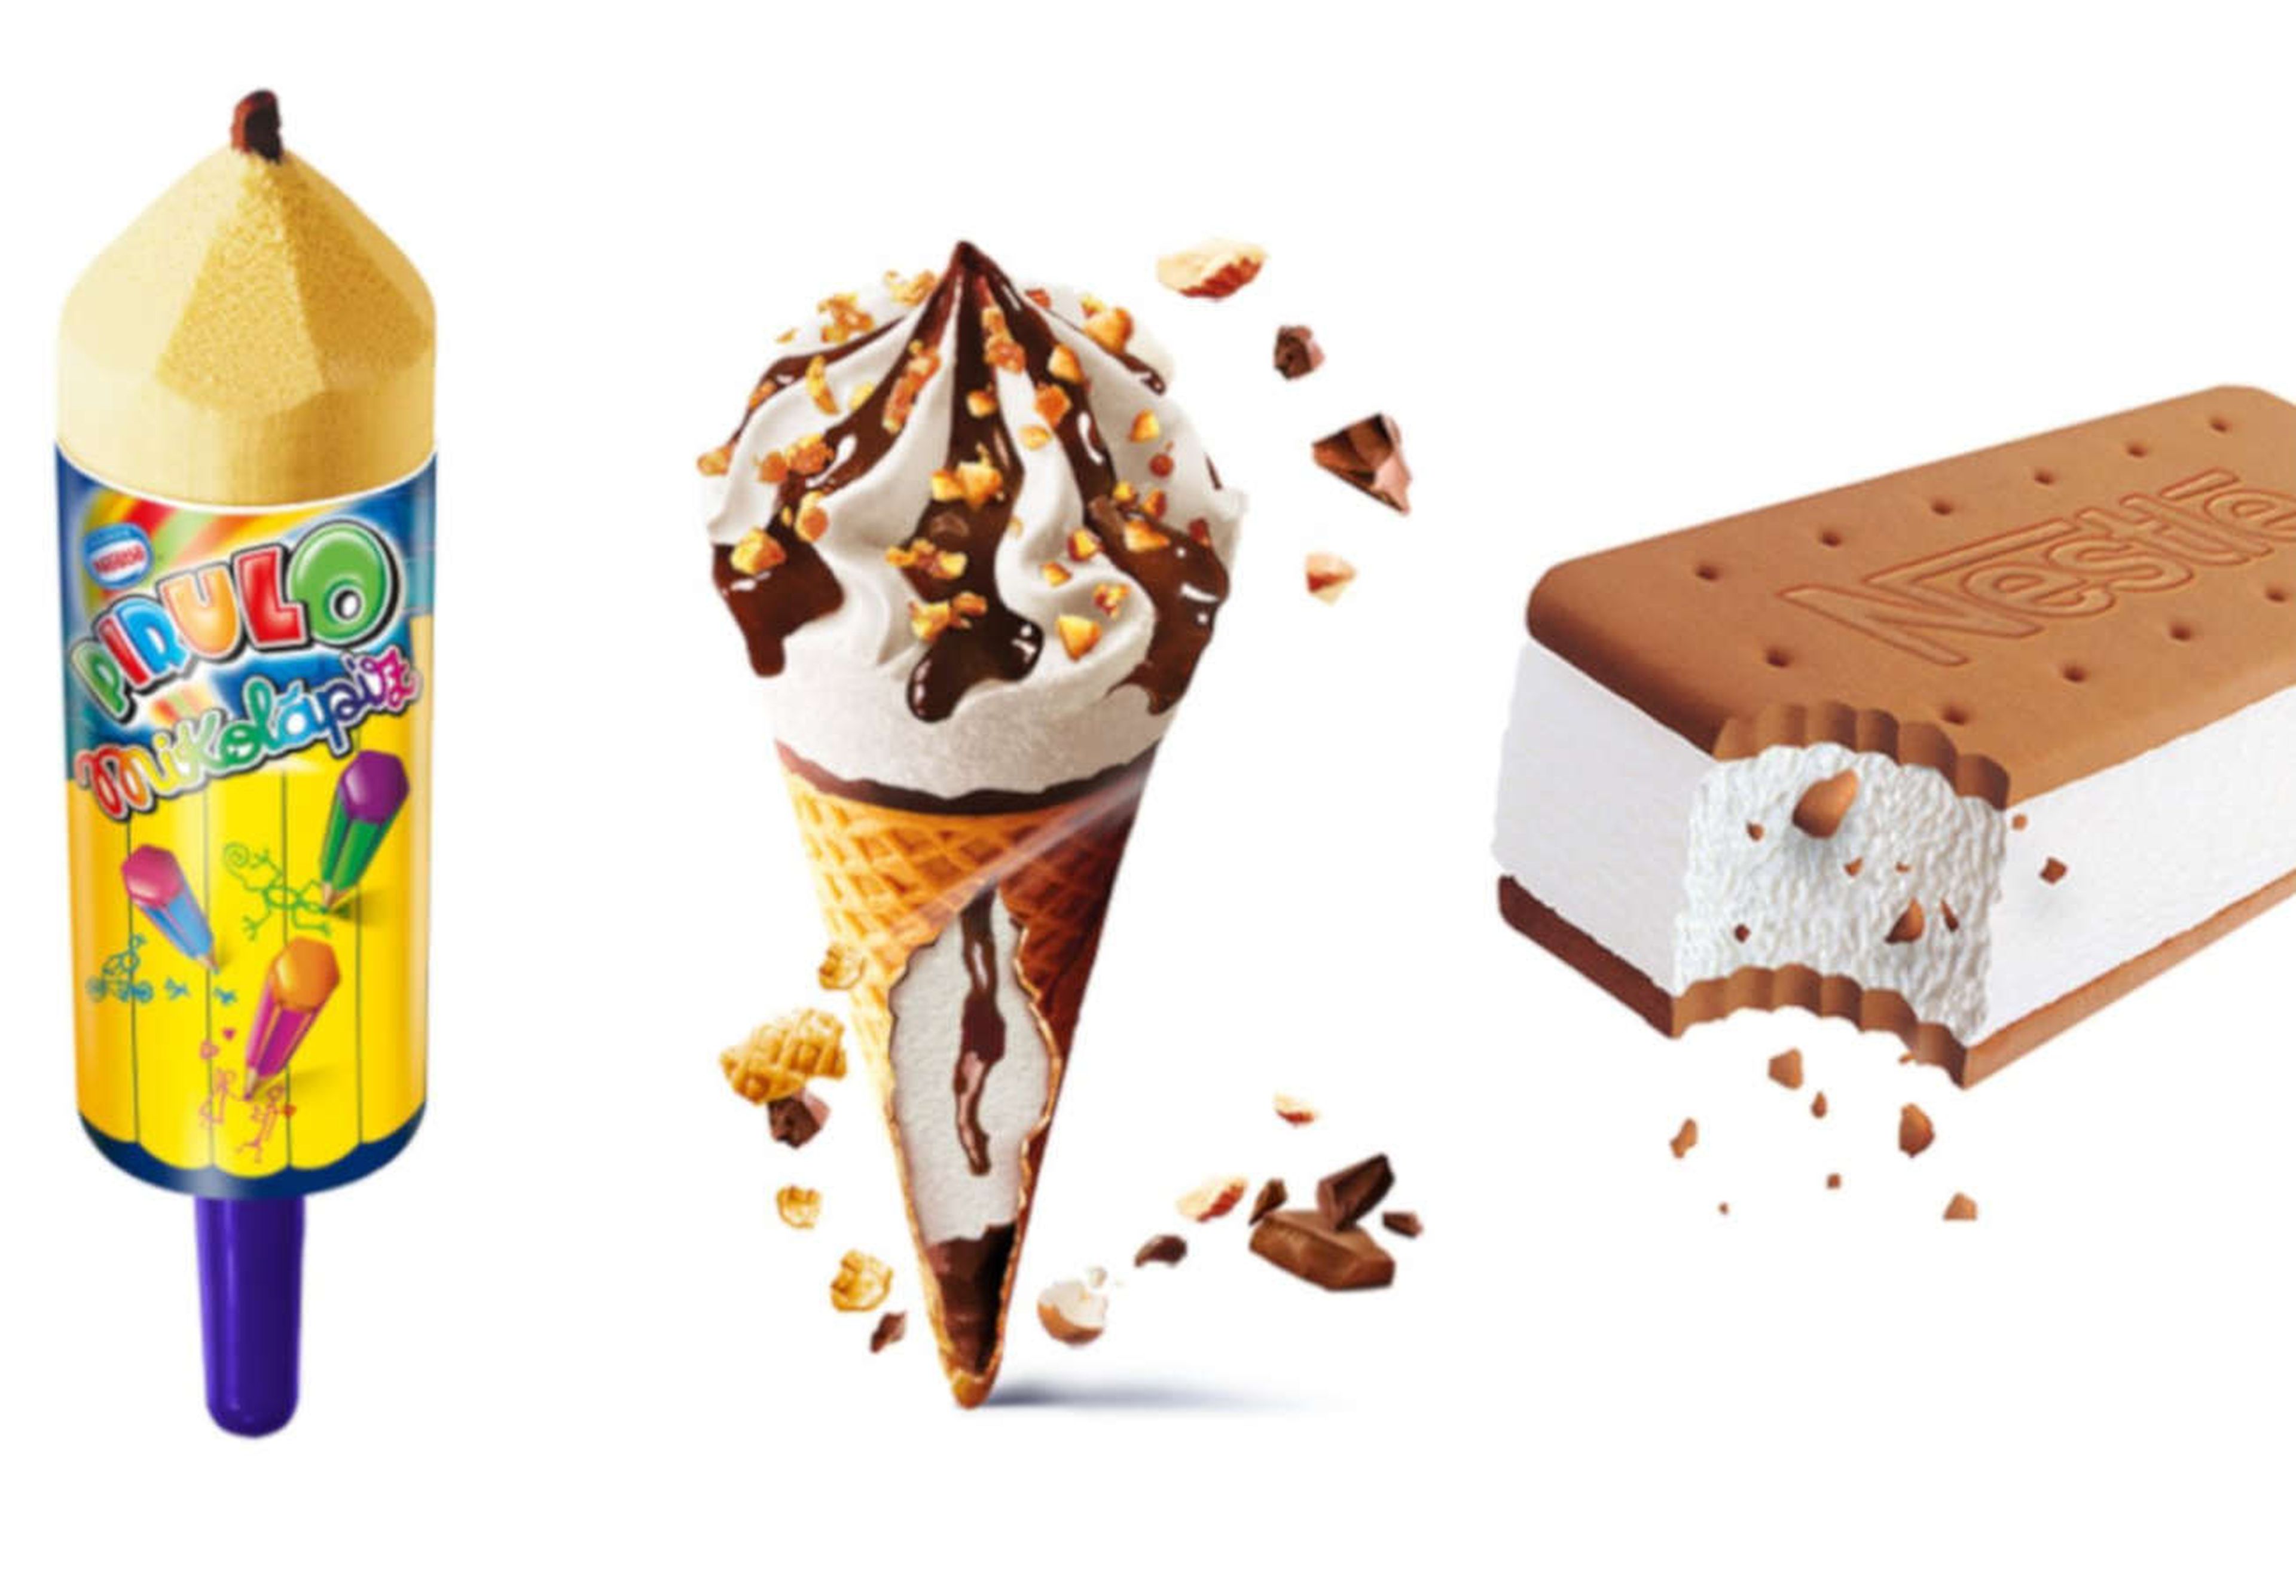 Facua publica una nueva lista de helados de Nestlé con óxido de etileno: aquí puedes consultar todas las unidades de esta y otras marcas